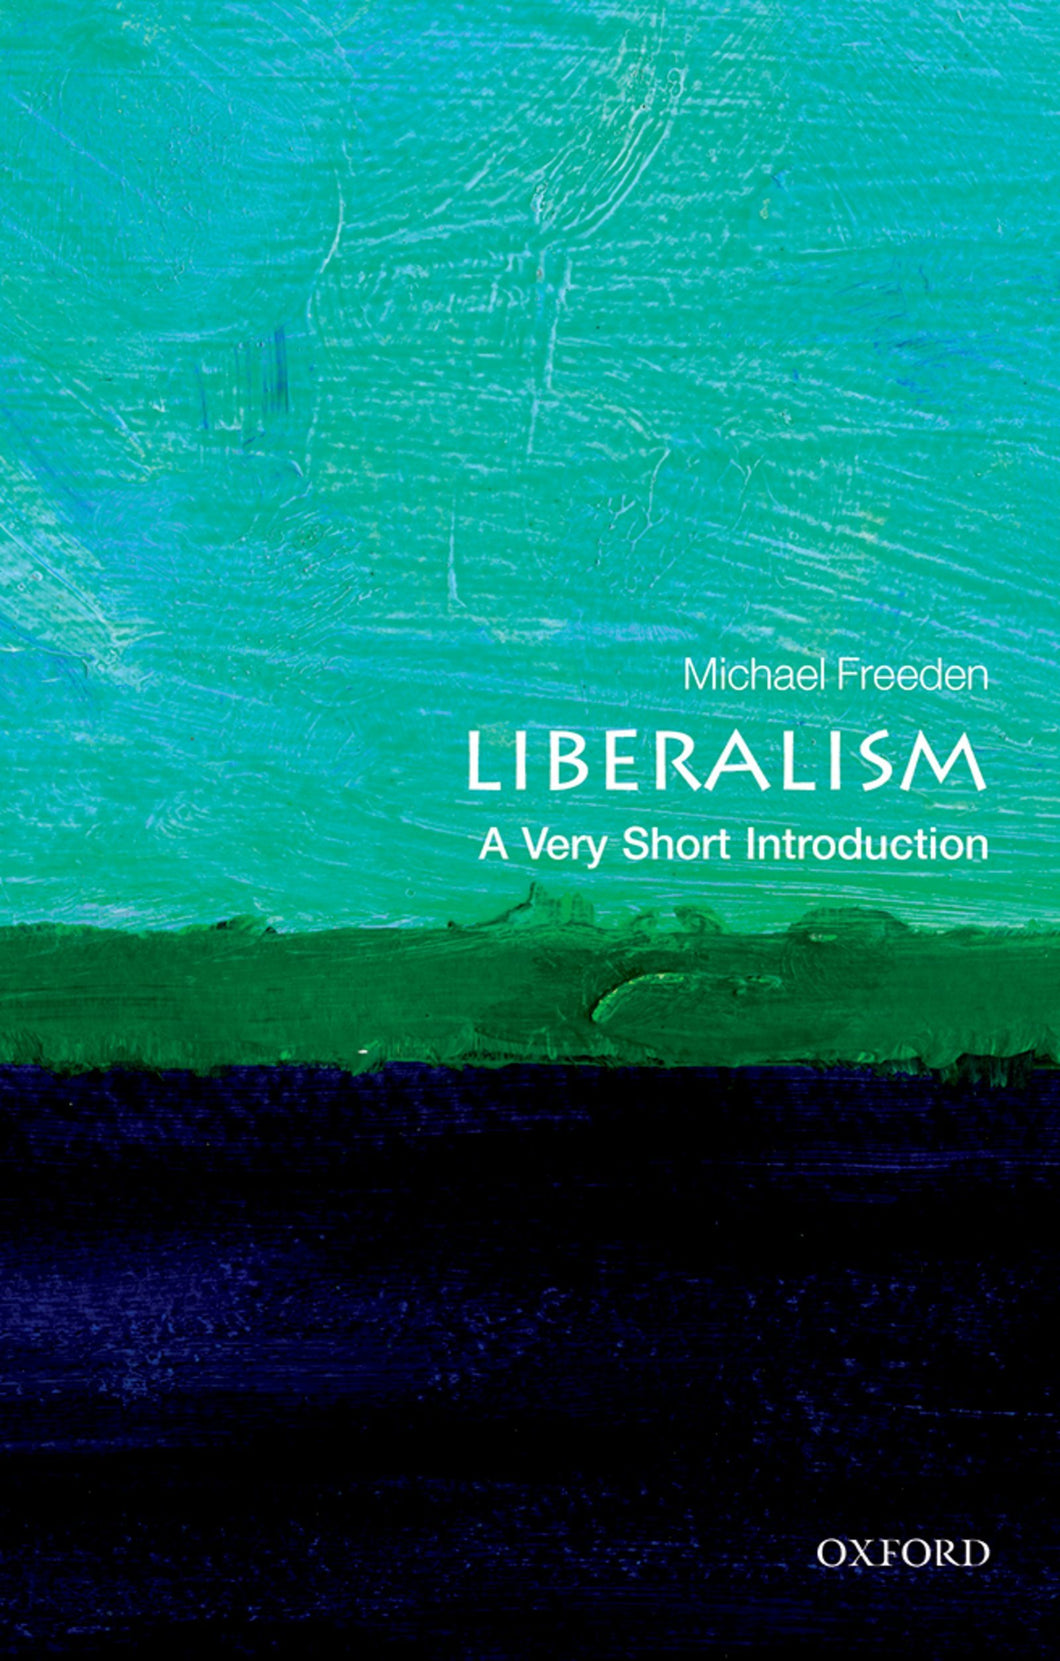 Liberalism: A Very Short Introduction ร้านหนังสือและสิ่งของ เป็นร้านหนังสือภาษาอังกฤษหายาก และร้านกาแฟ หรือ บุ๊คคาเฟ่ ตั้งอยู่สุขุมวิท กรุงเทพ